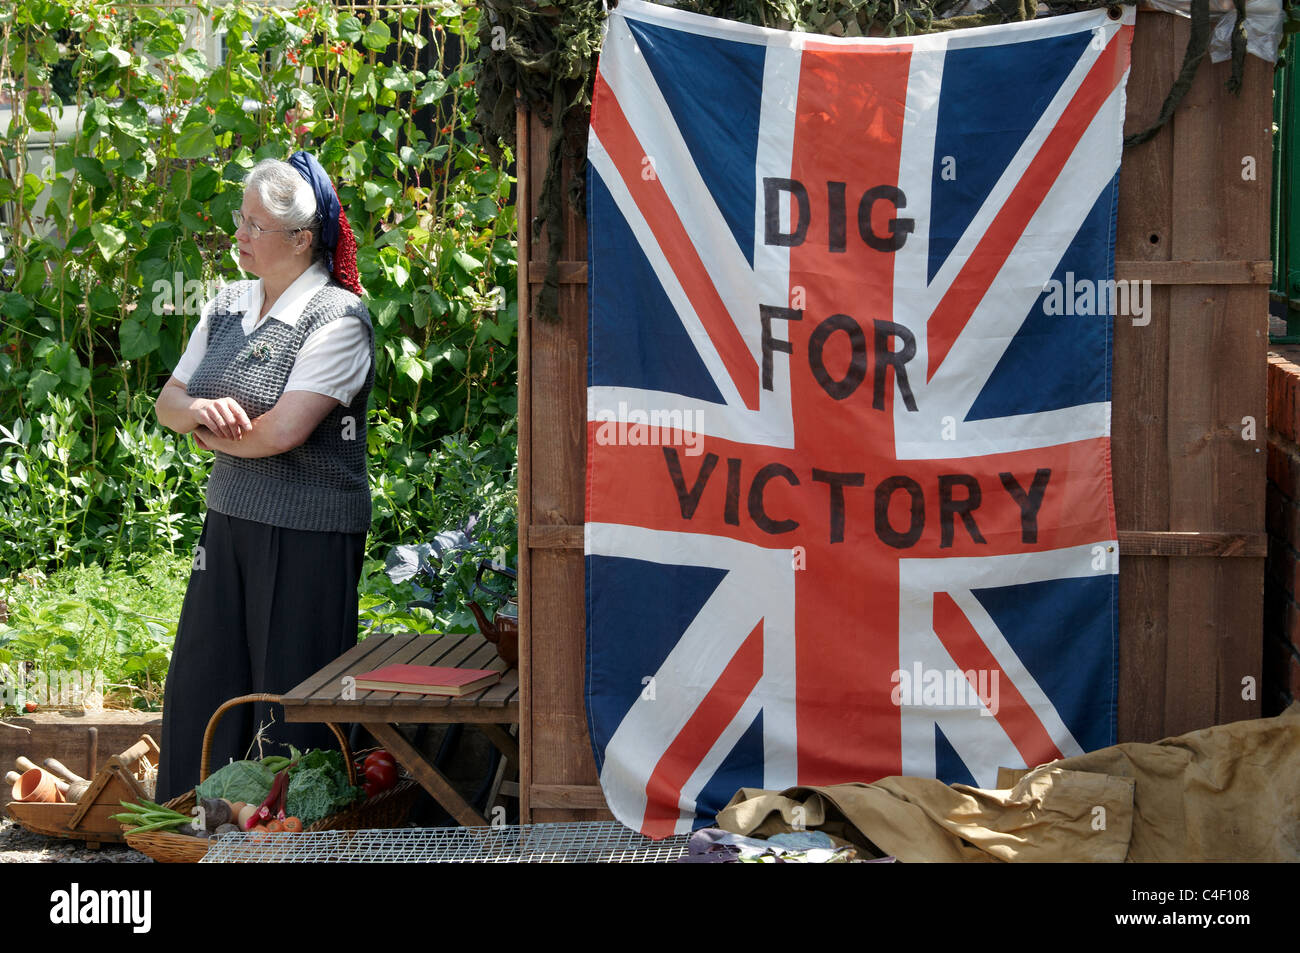 Reproduction d'une petite cuisine jardin de guerre à une gare dans le Hampshire démontrant Dig for Victory. Banque D'Images